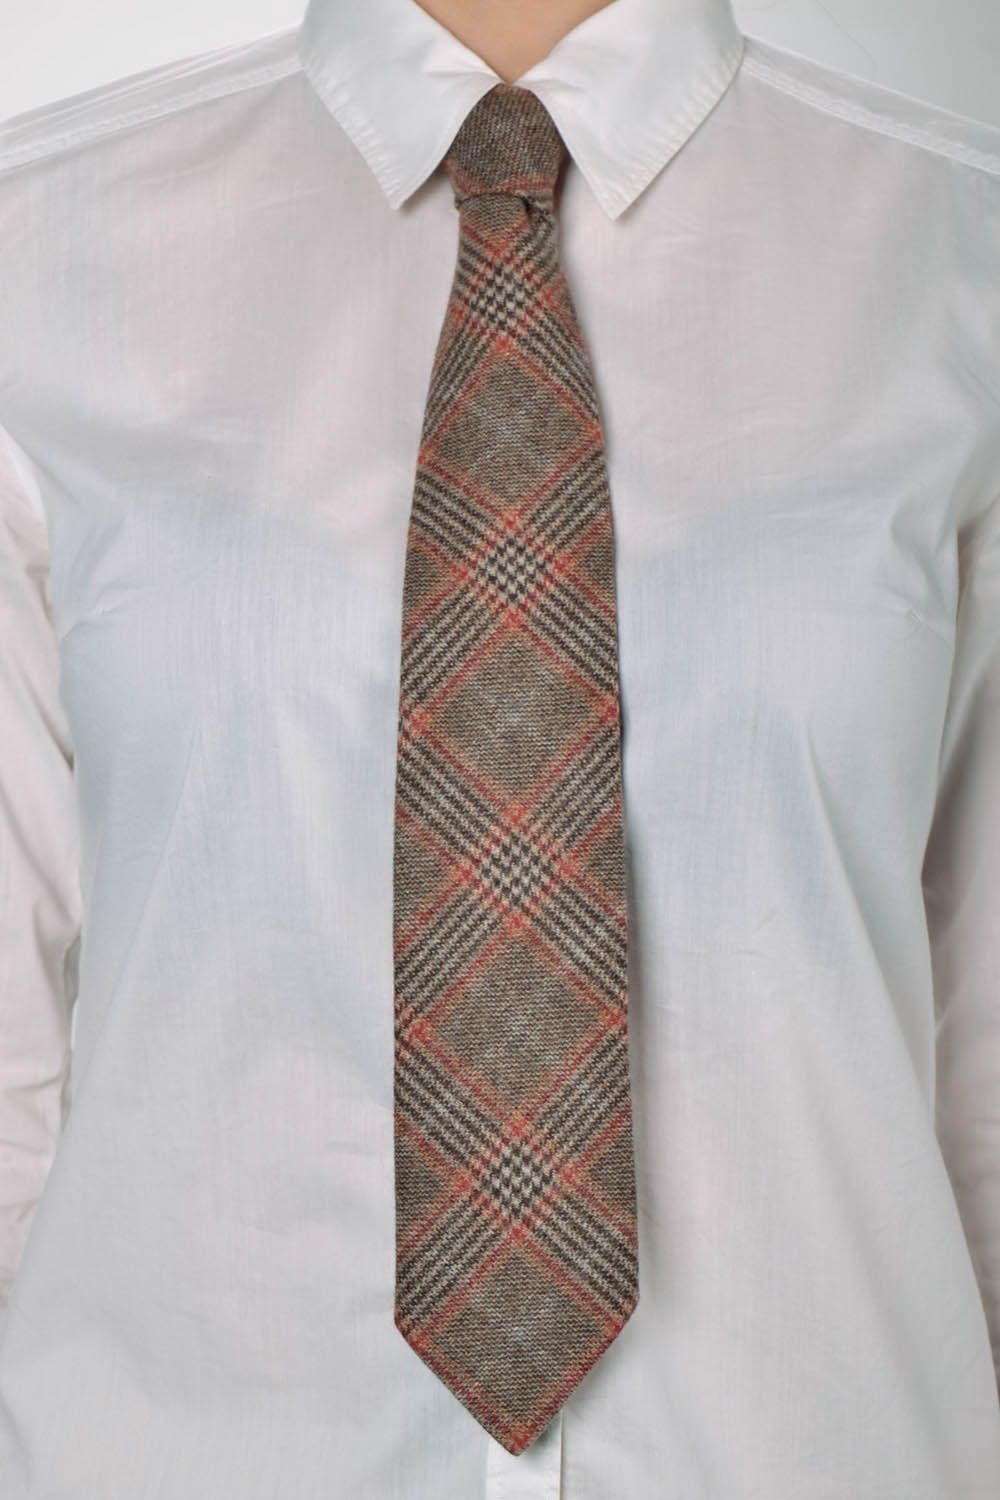 Cravate en tissu faite main originale photo 5